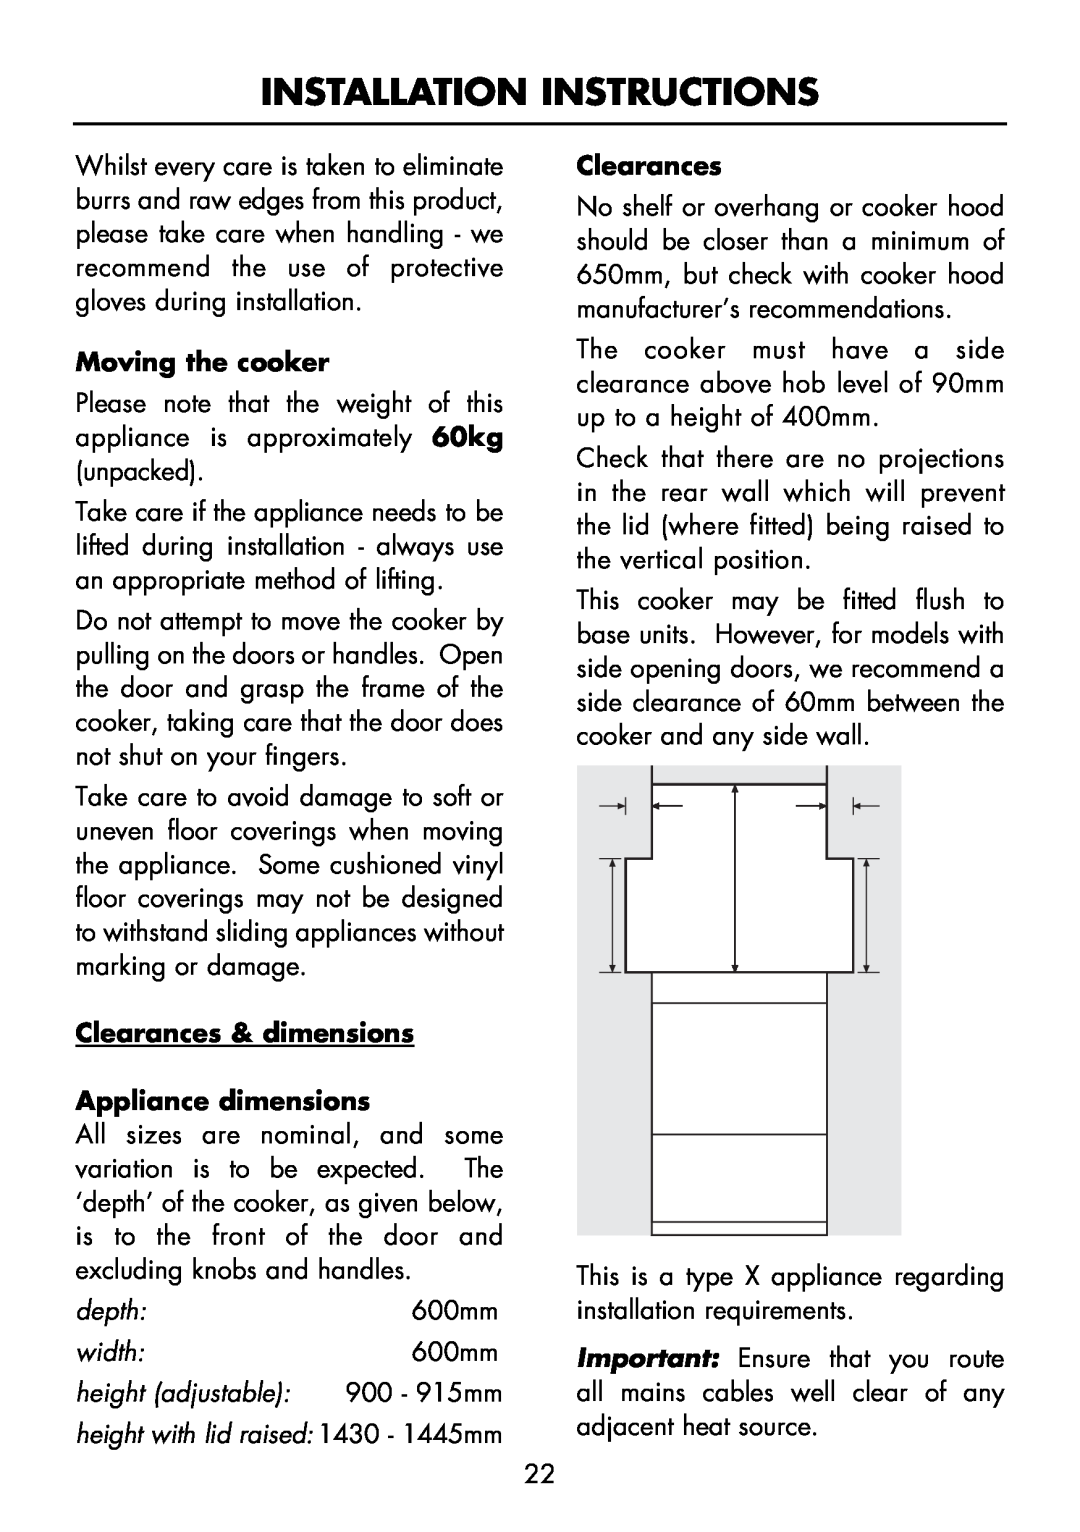 Glen Dimplex Home Appliances Ltd FS 60 DO DF manual Clearances & dimensions Appliance dimensions, Installation Instructions 